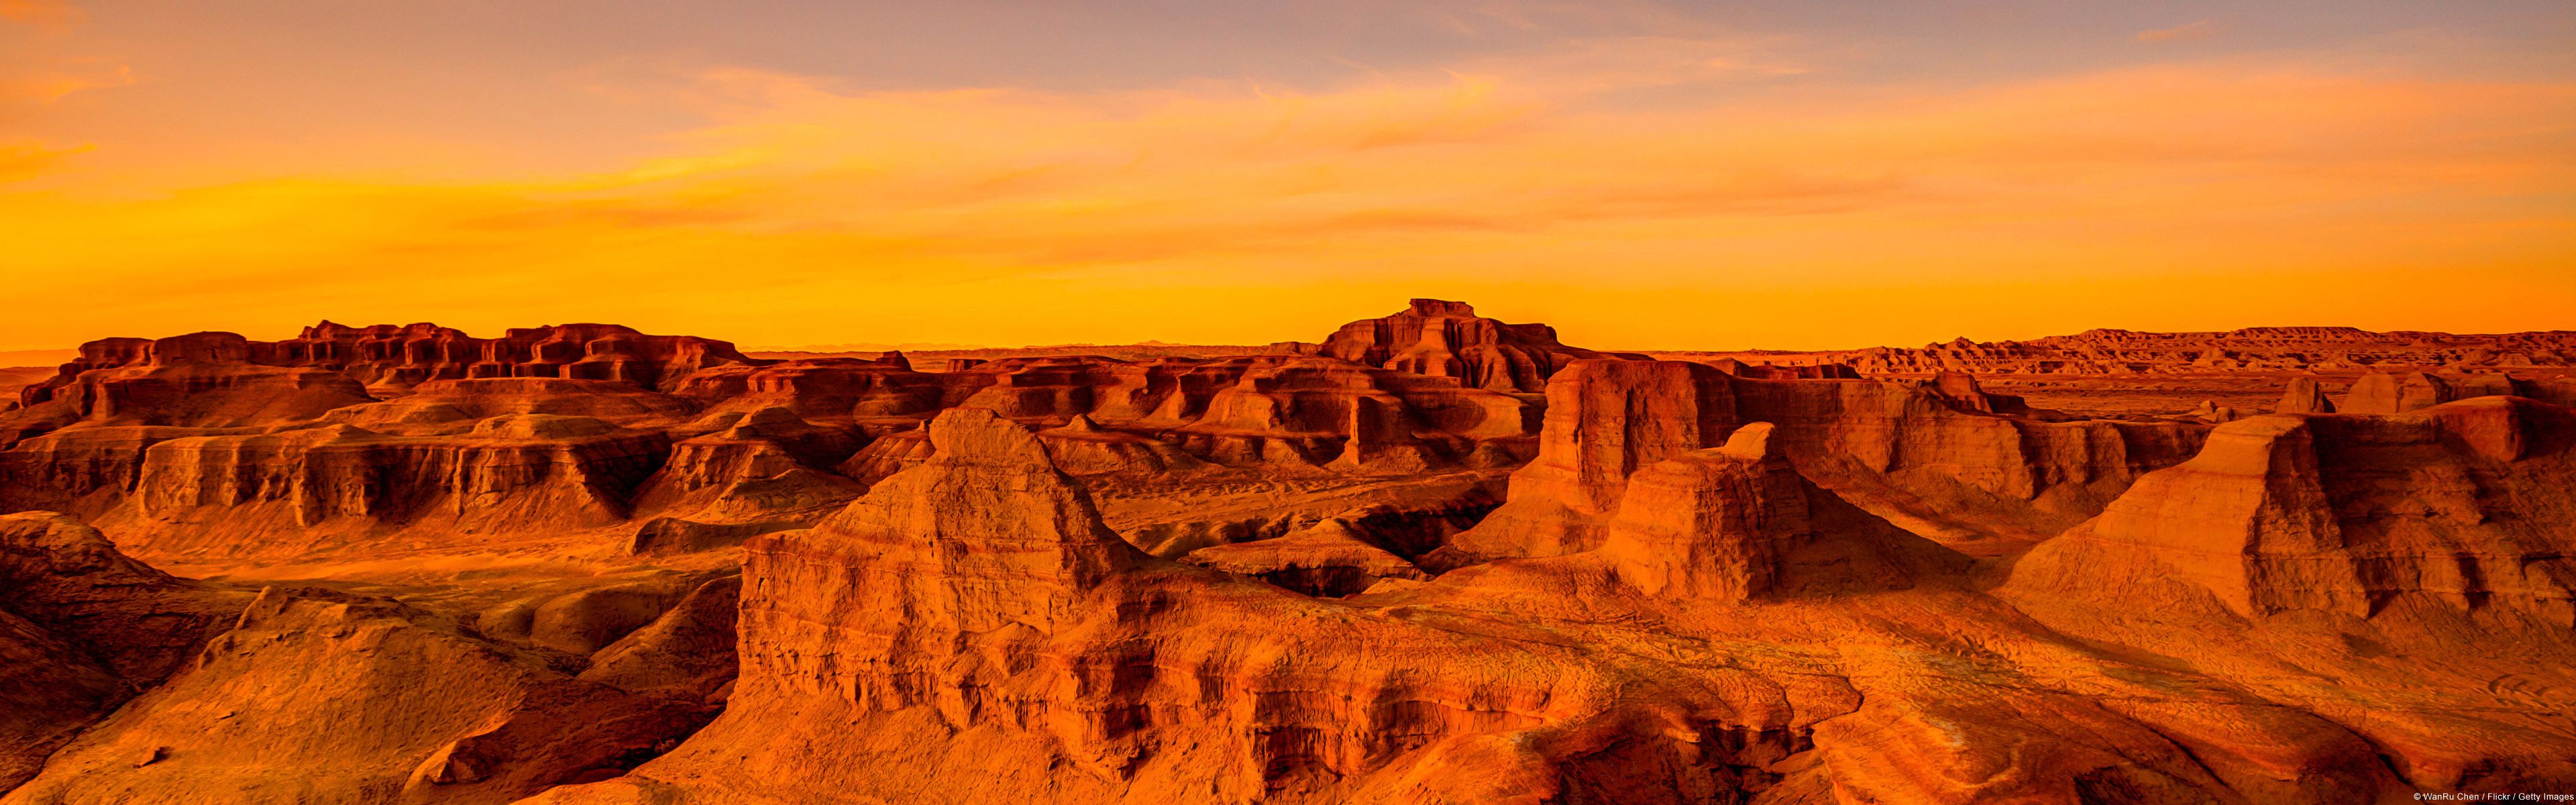 Gobi Desert Sunset HD Wallpaper. Background Imagex1200